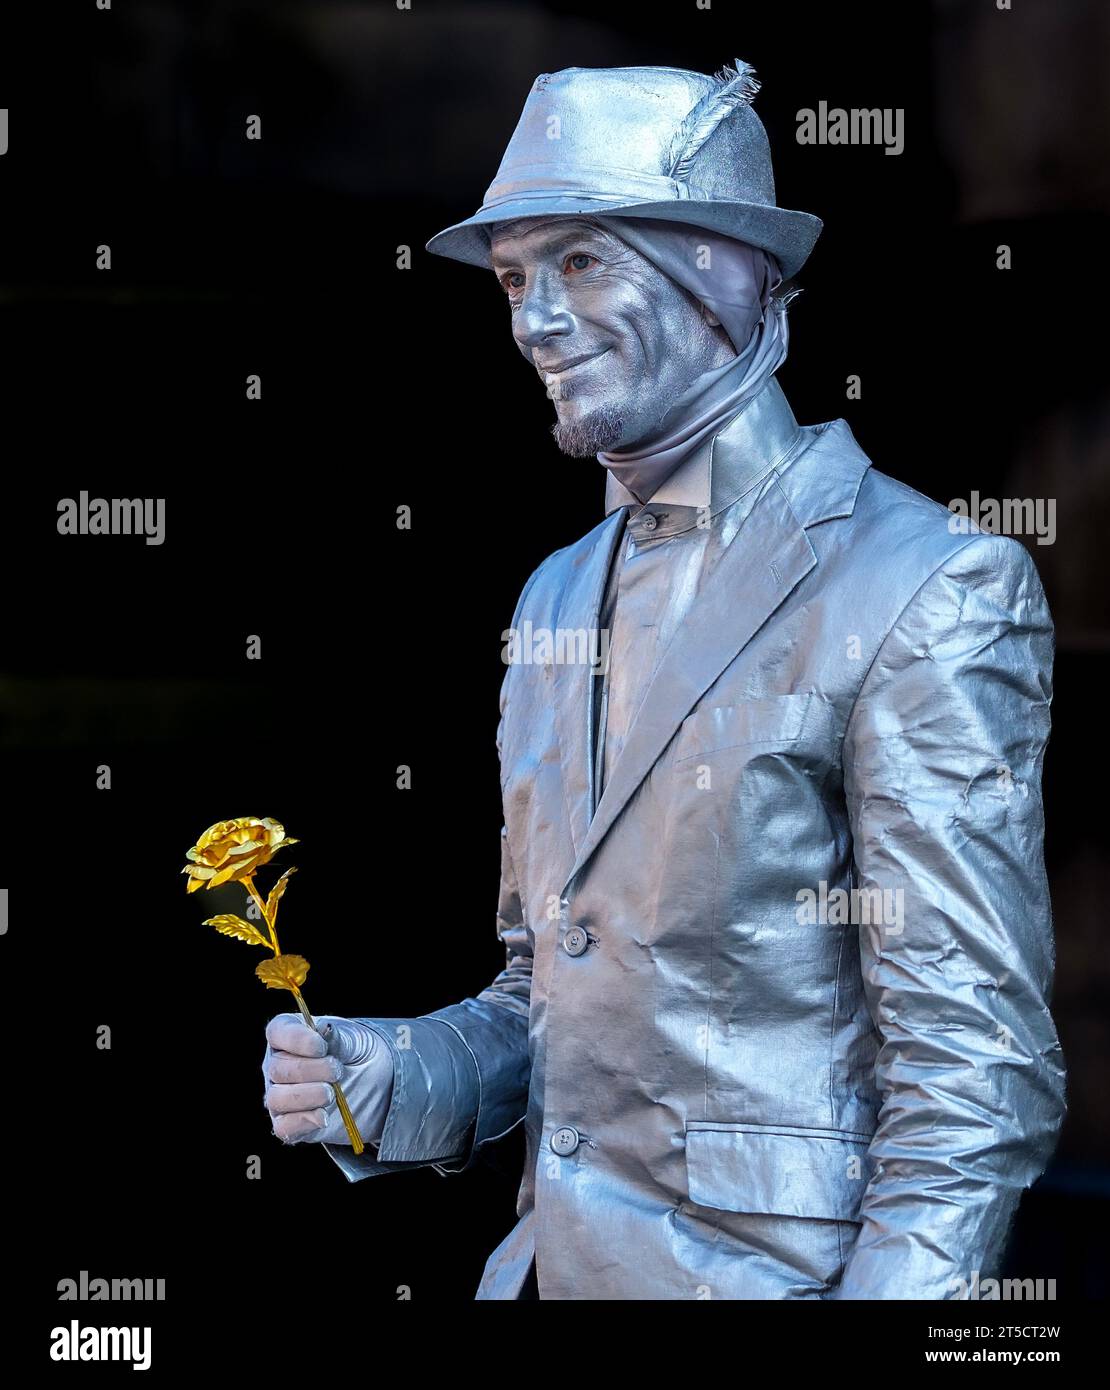 Silberfarbener Mann mit einer goldenen Rose, der sich als Statue ausgibt, die in Edinburgh Fringe, Schottland, auftritt Stockfoto